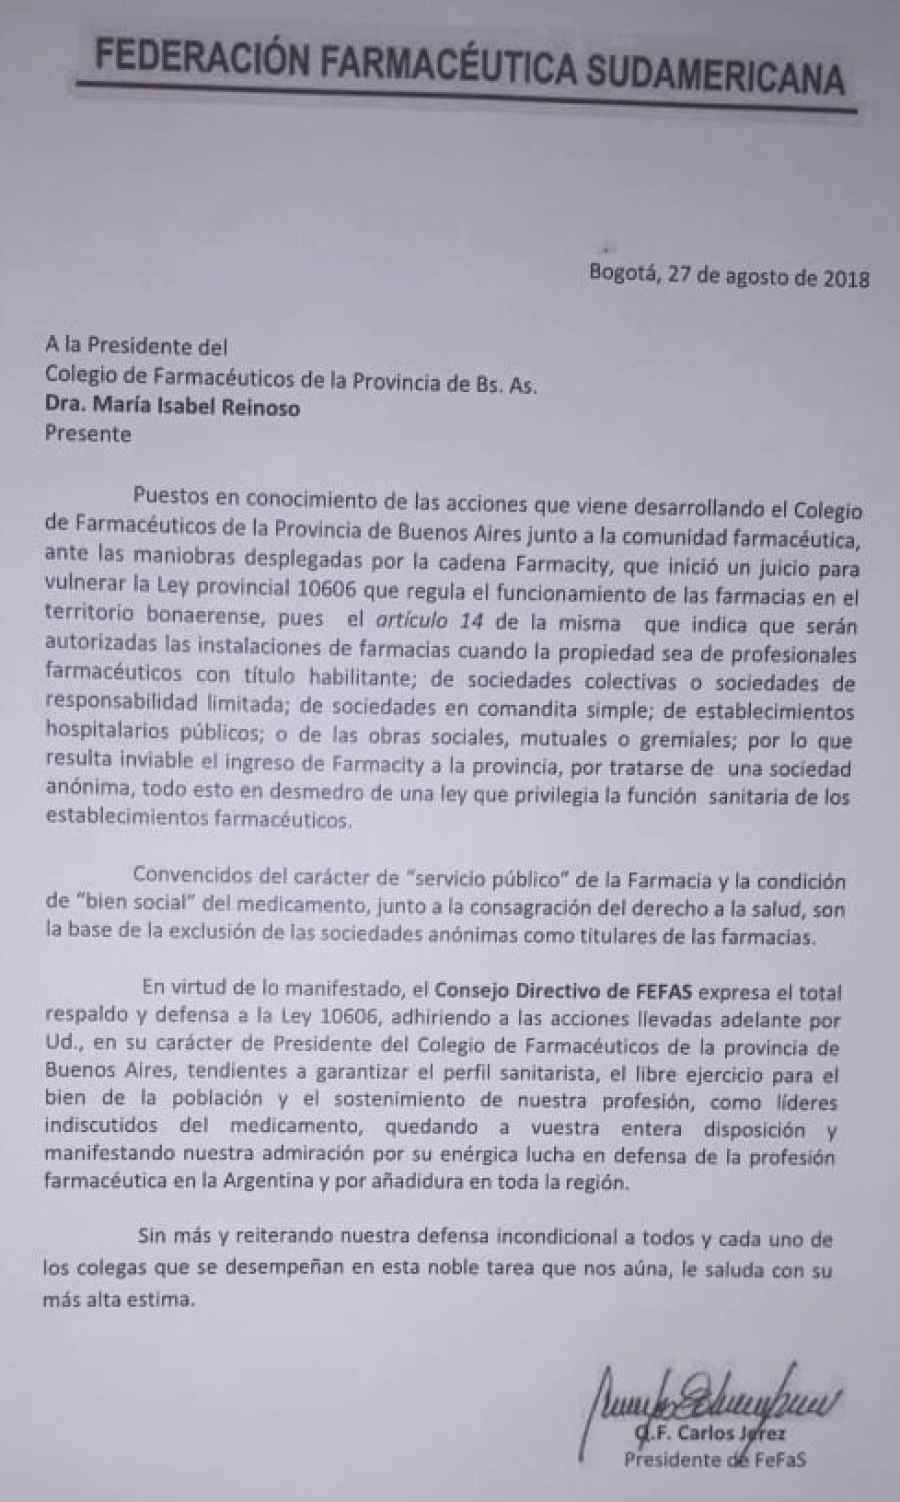 La Federación Farmacéutica Sudamericana expresó su respaldo y defensa a la Ley 10606